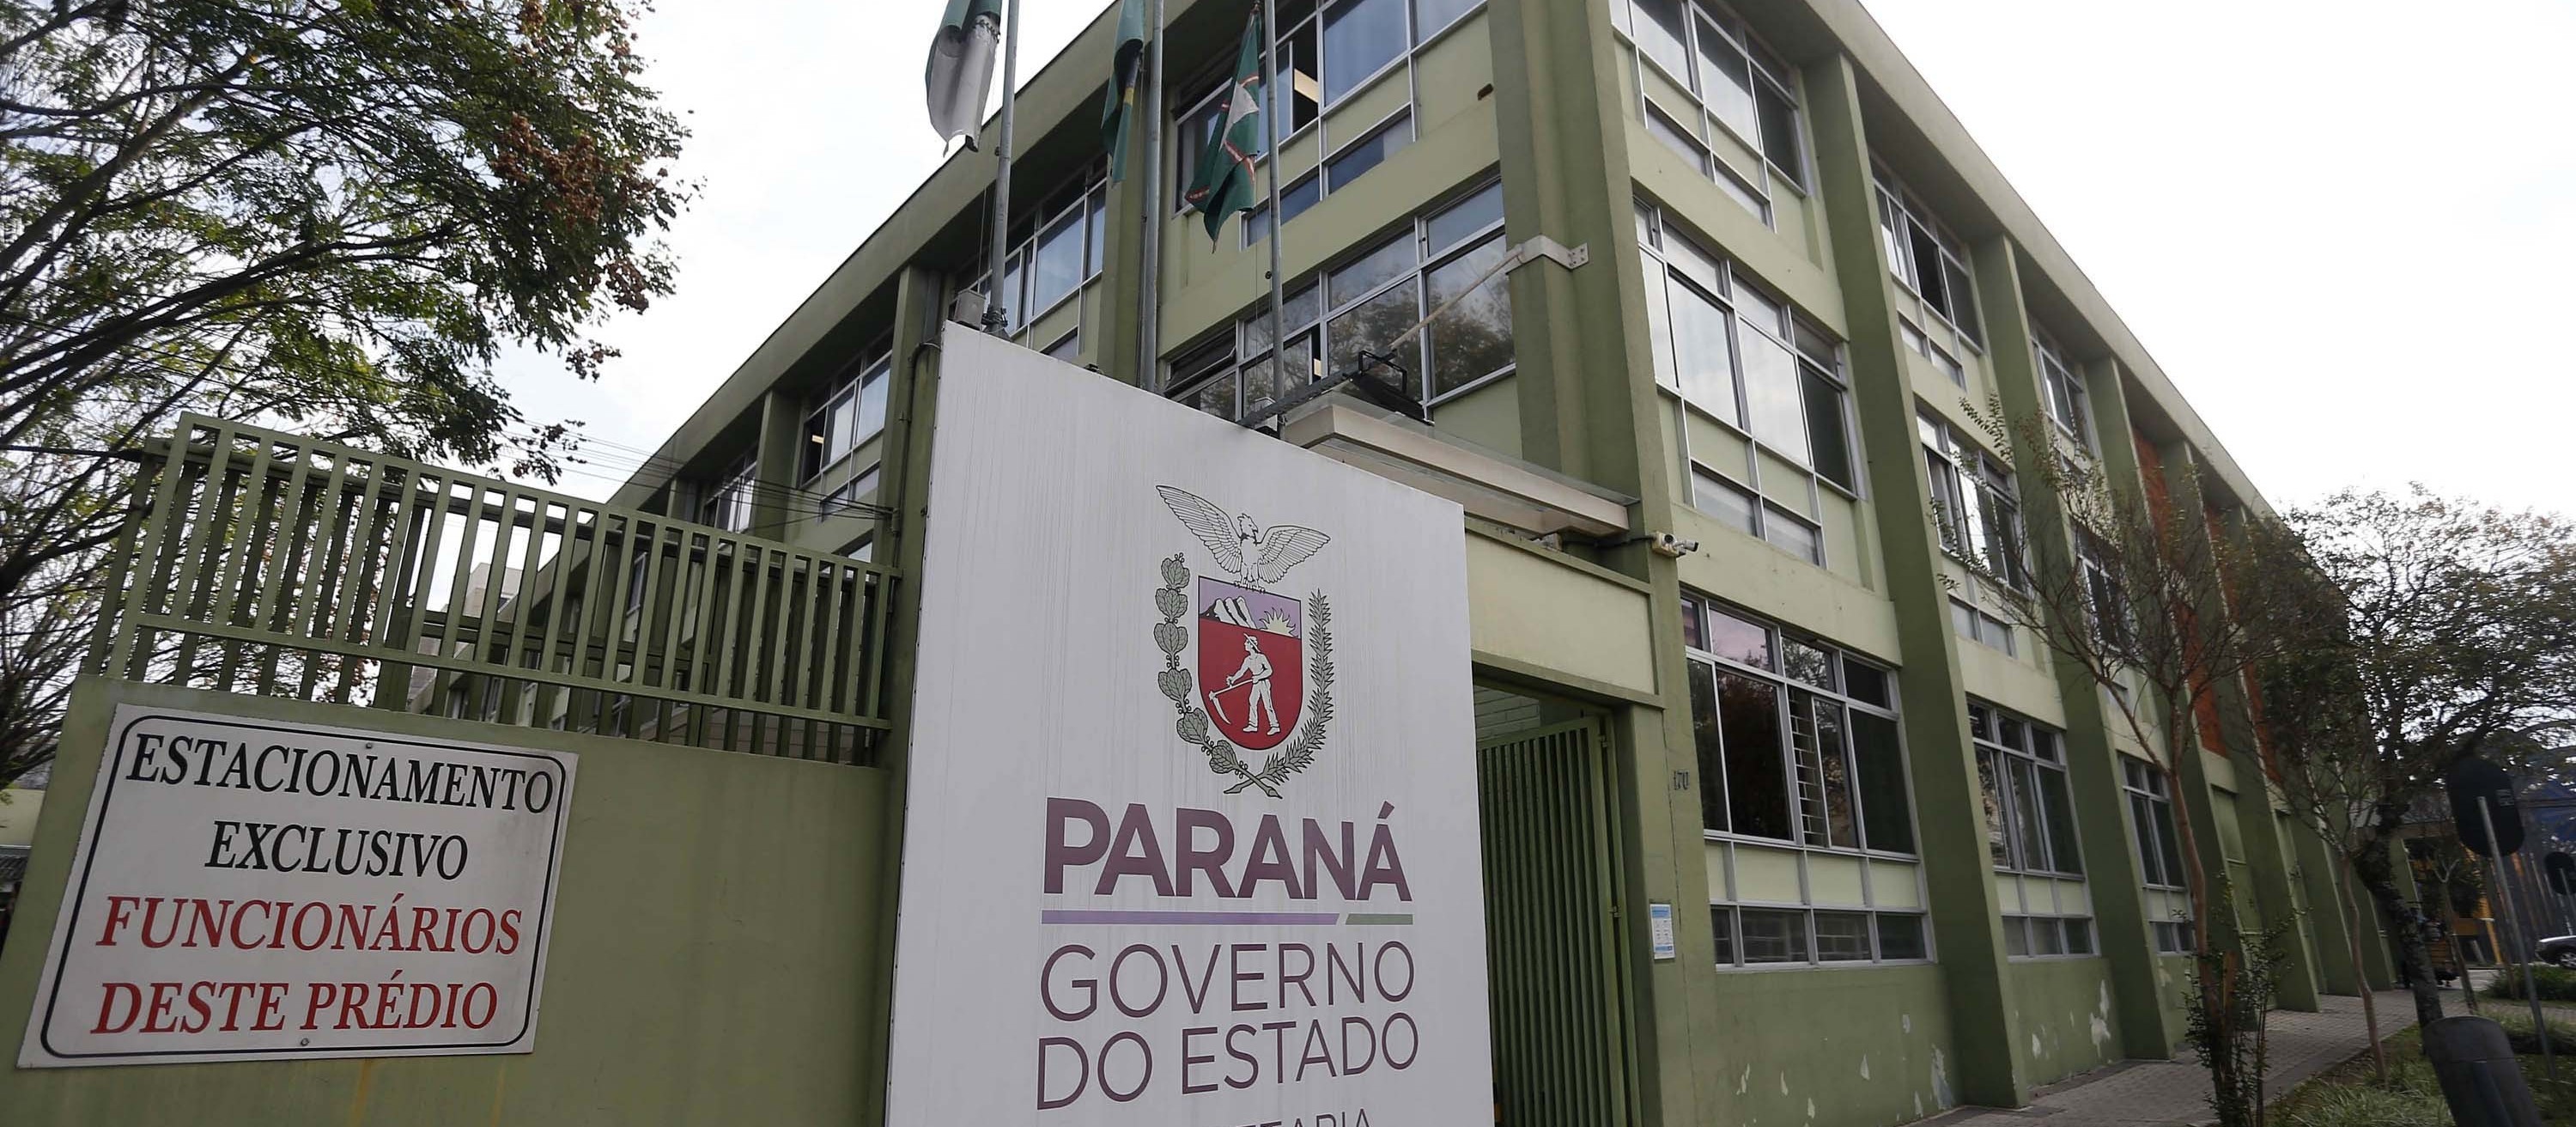 66% dos moradores da região Oeste aprovam gestão da saúde do Paraná